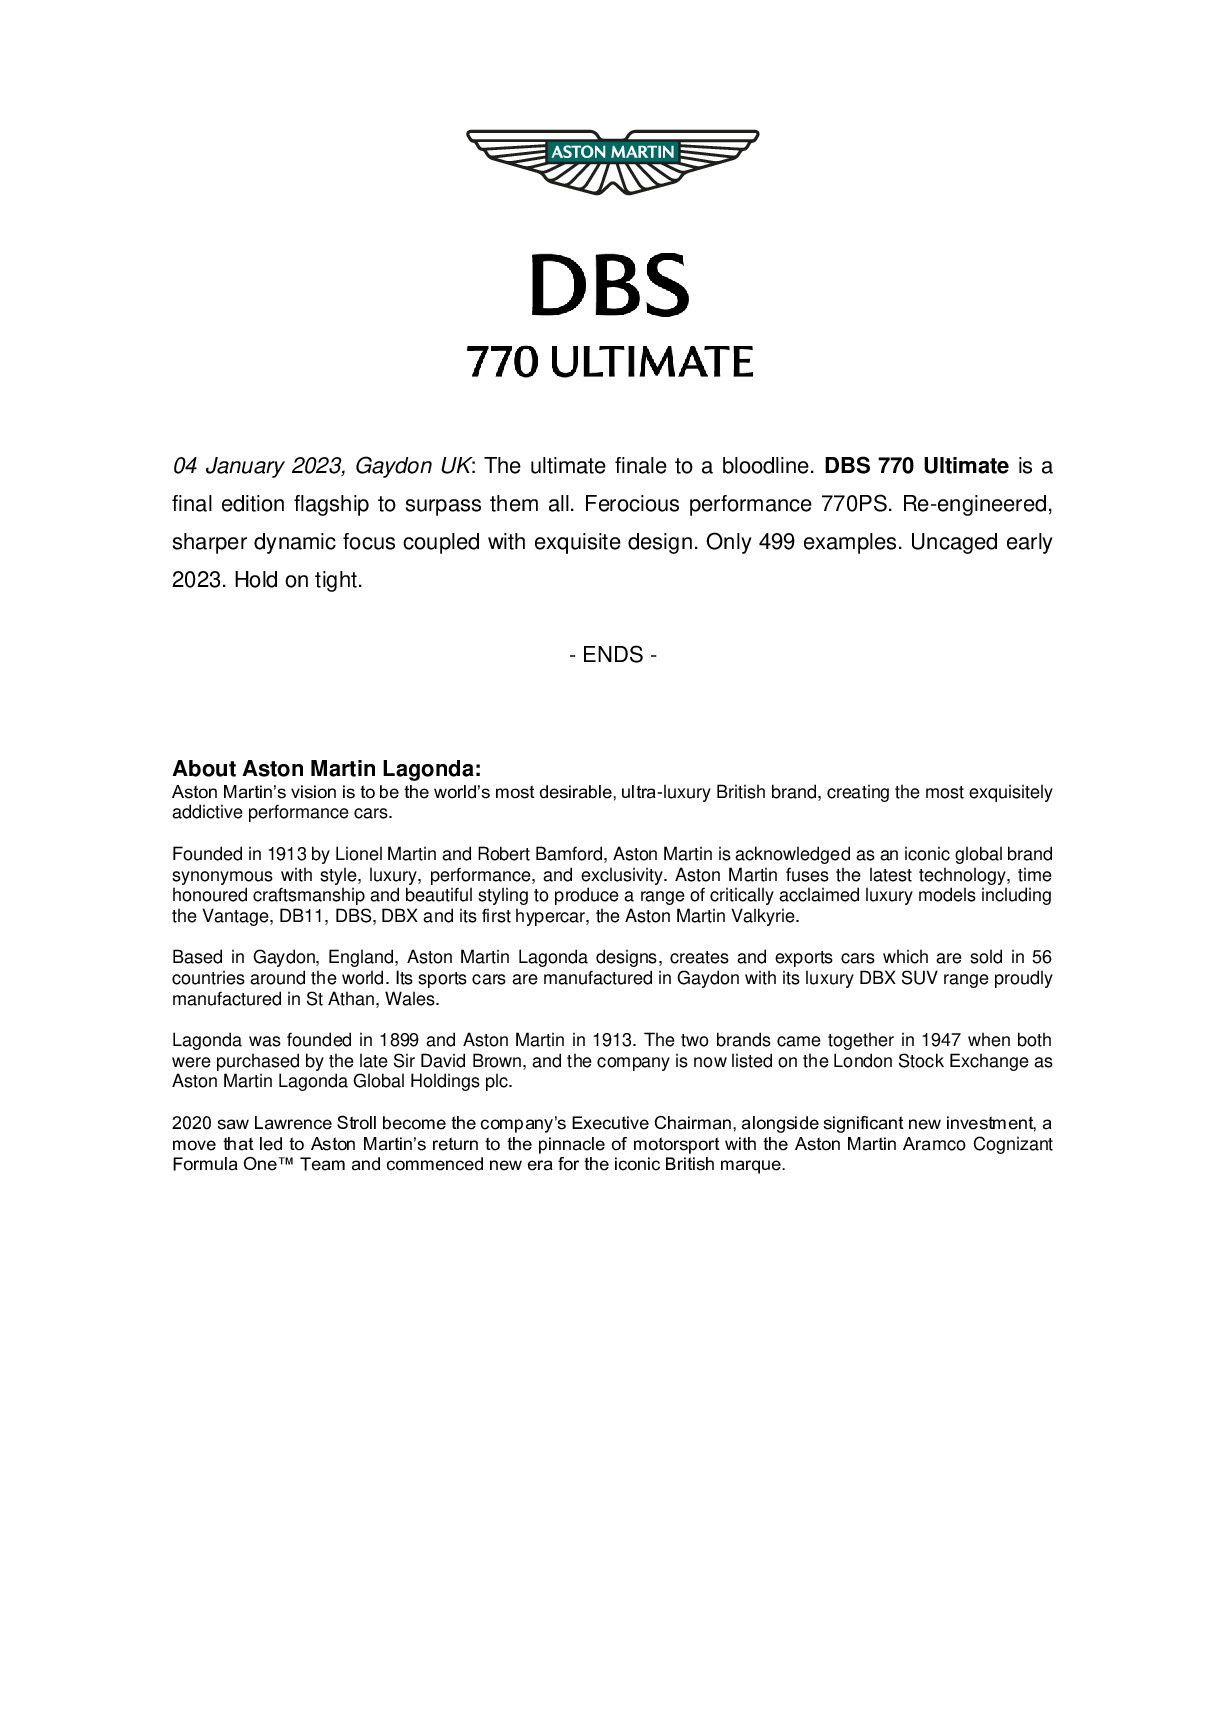 DBS 770 Ultimate